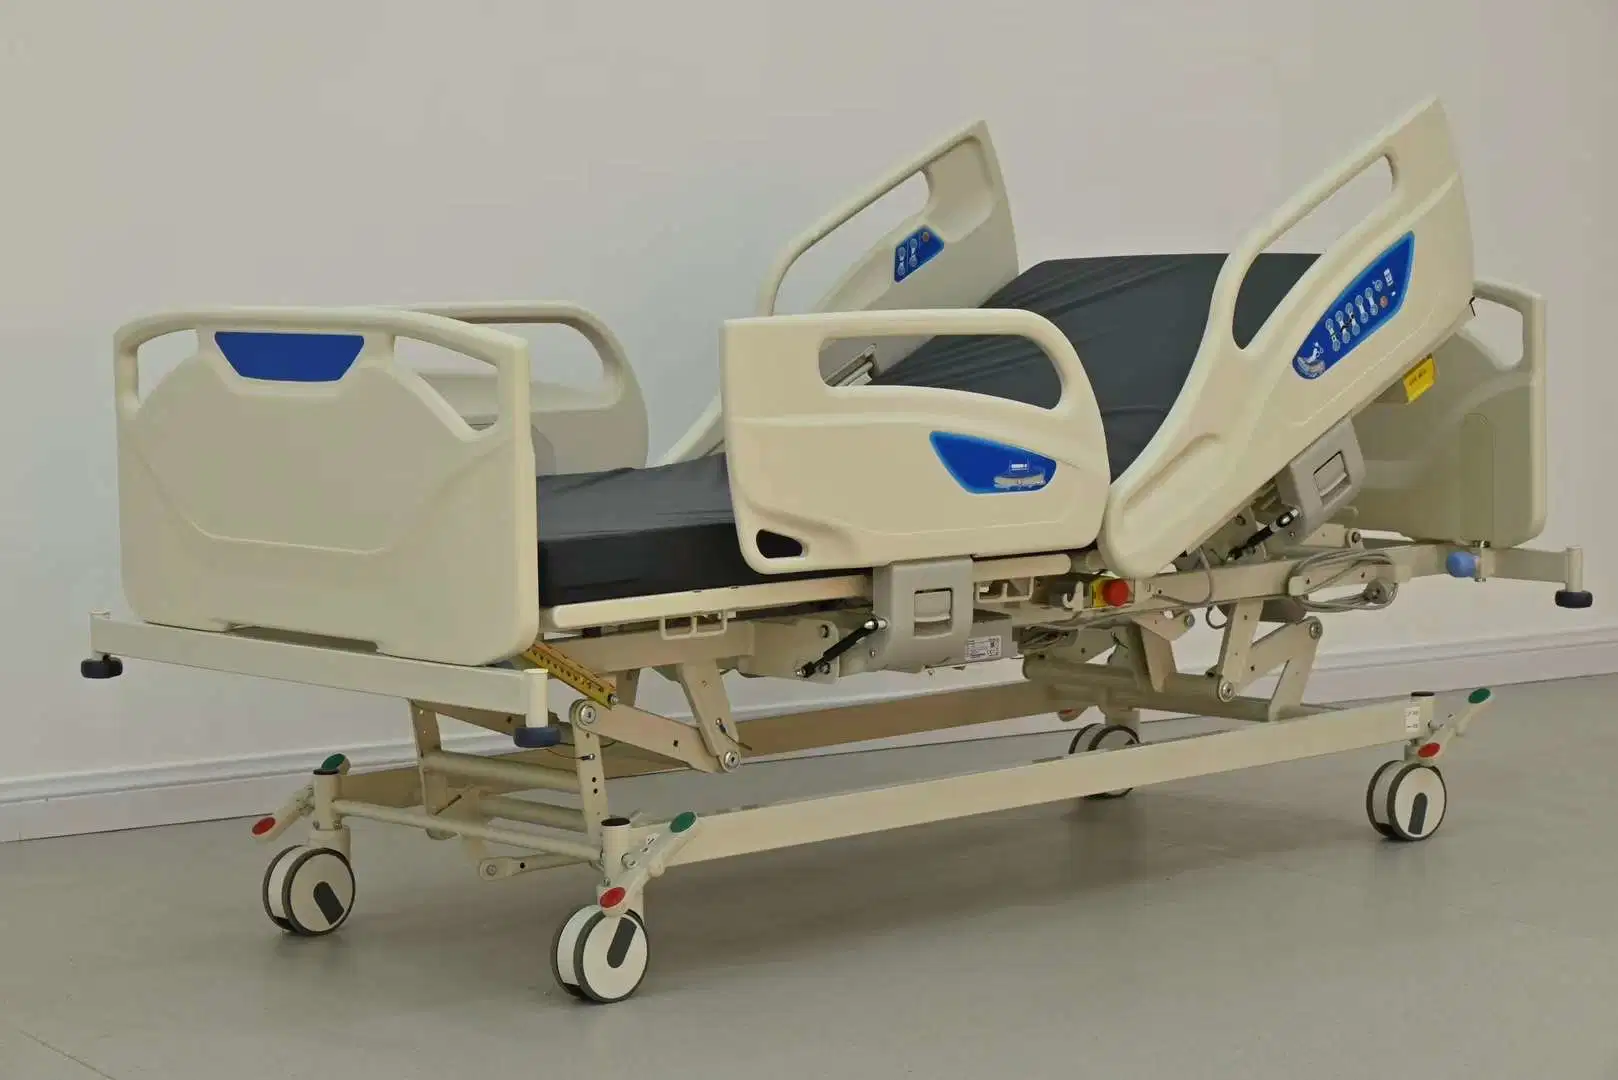 El equipo de Hospital confortable cama ajustable de acero inoxidable Electric Medical cama UCI